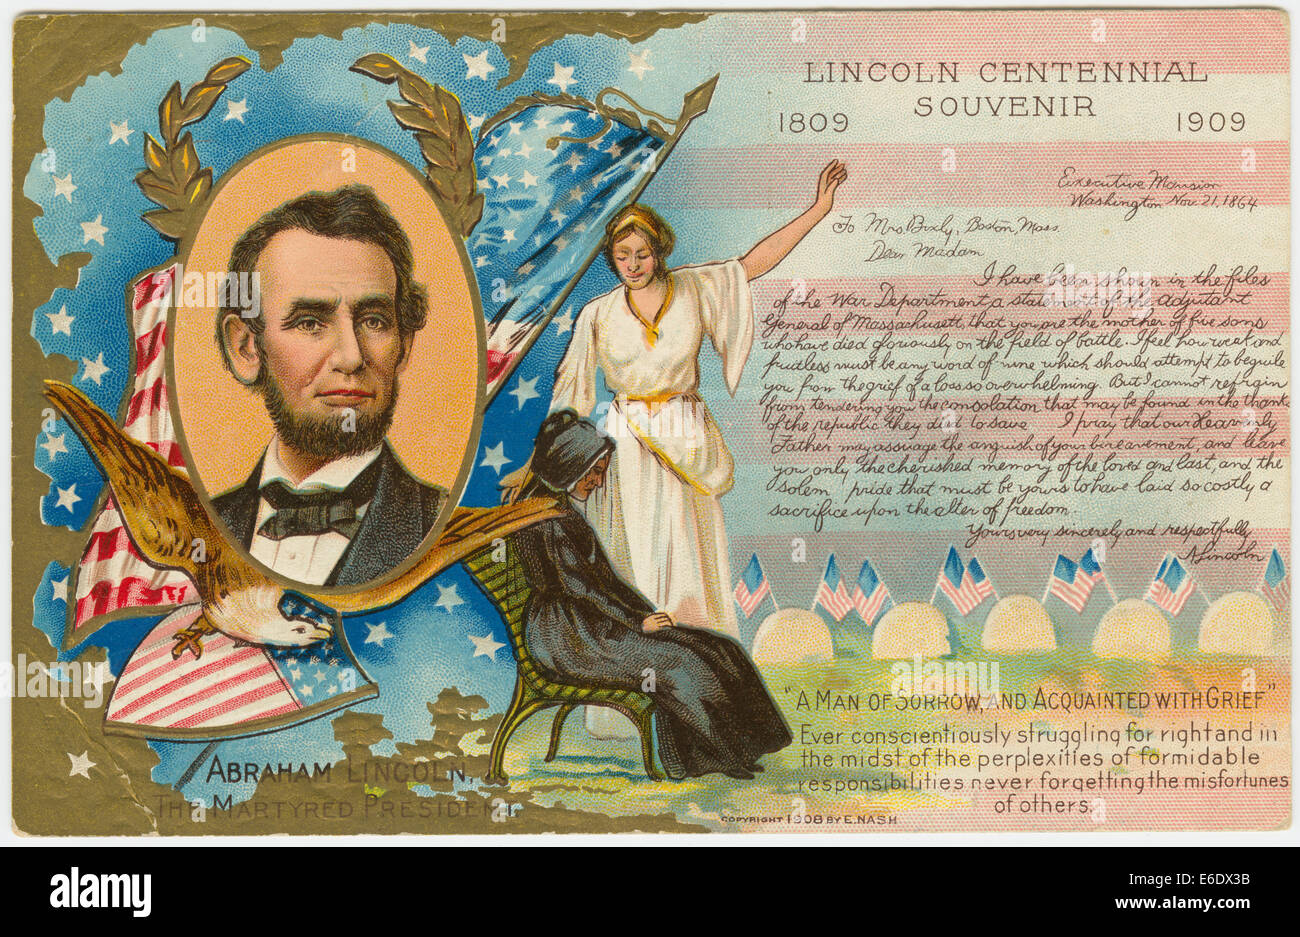 Souvenir du centenaire 1809-1909 Lincoln Abraham Lincoln, le président martyr, carte postale, 1909 Banque D'Images